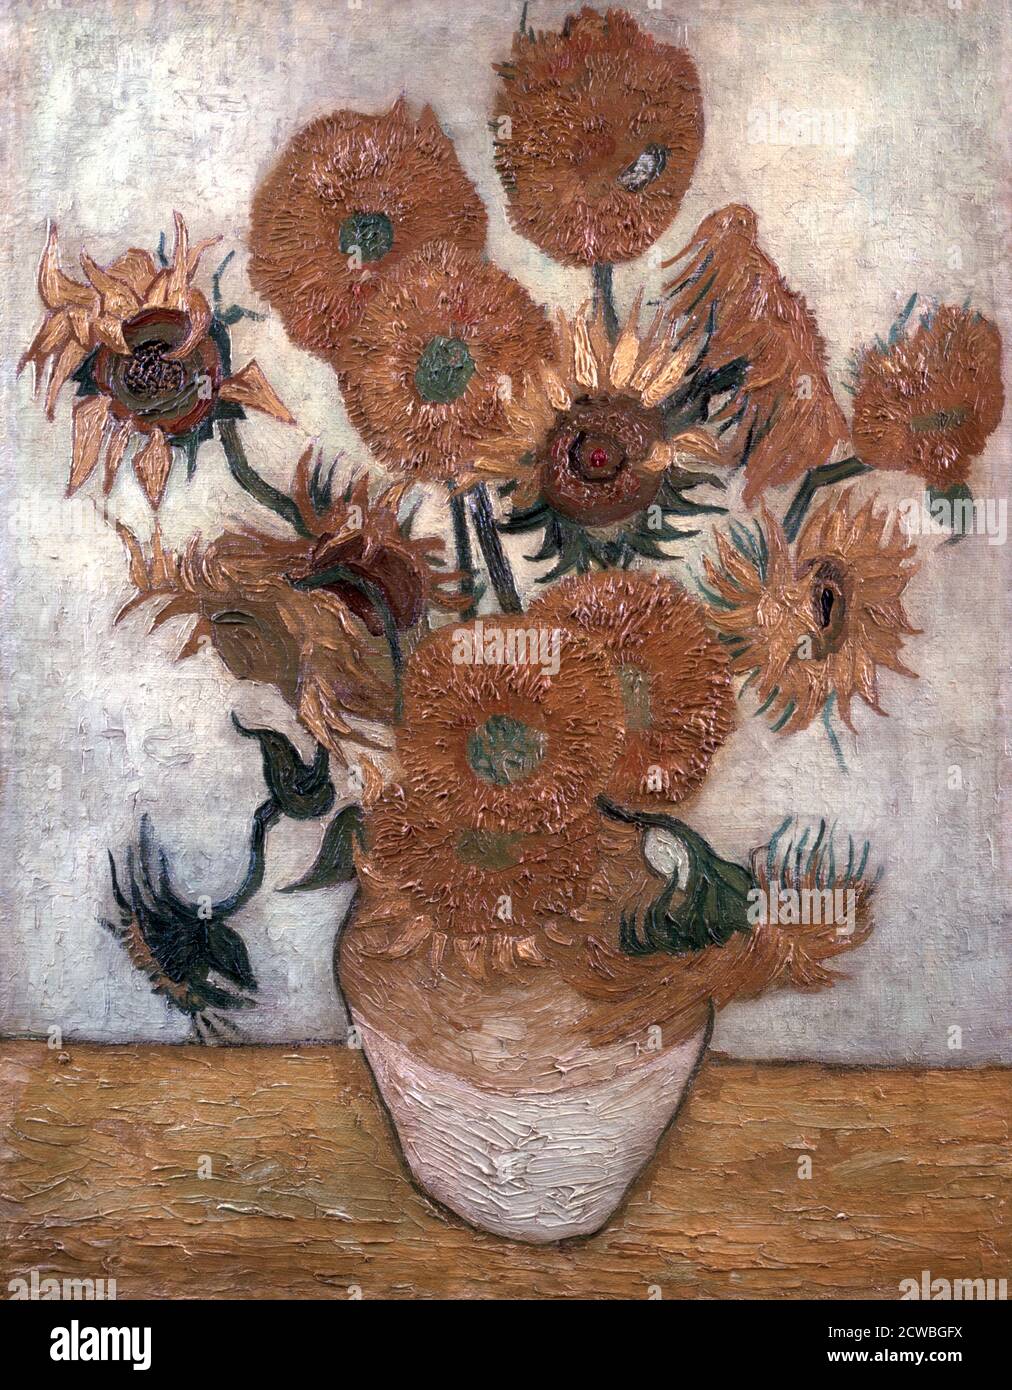 Tournesols' par vincent van gogh, 1889. L'une des quatre peintures de tournesol de Vincent van Gogh. De la collection du musée d'art Yasuda Kasai, Tokyo, Japon. Banque D'Images